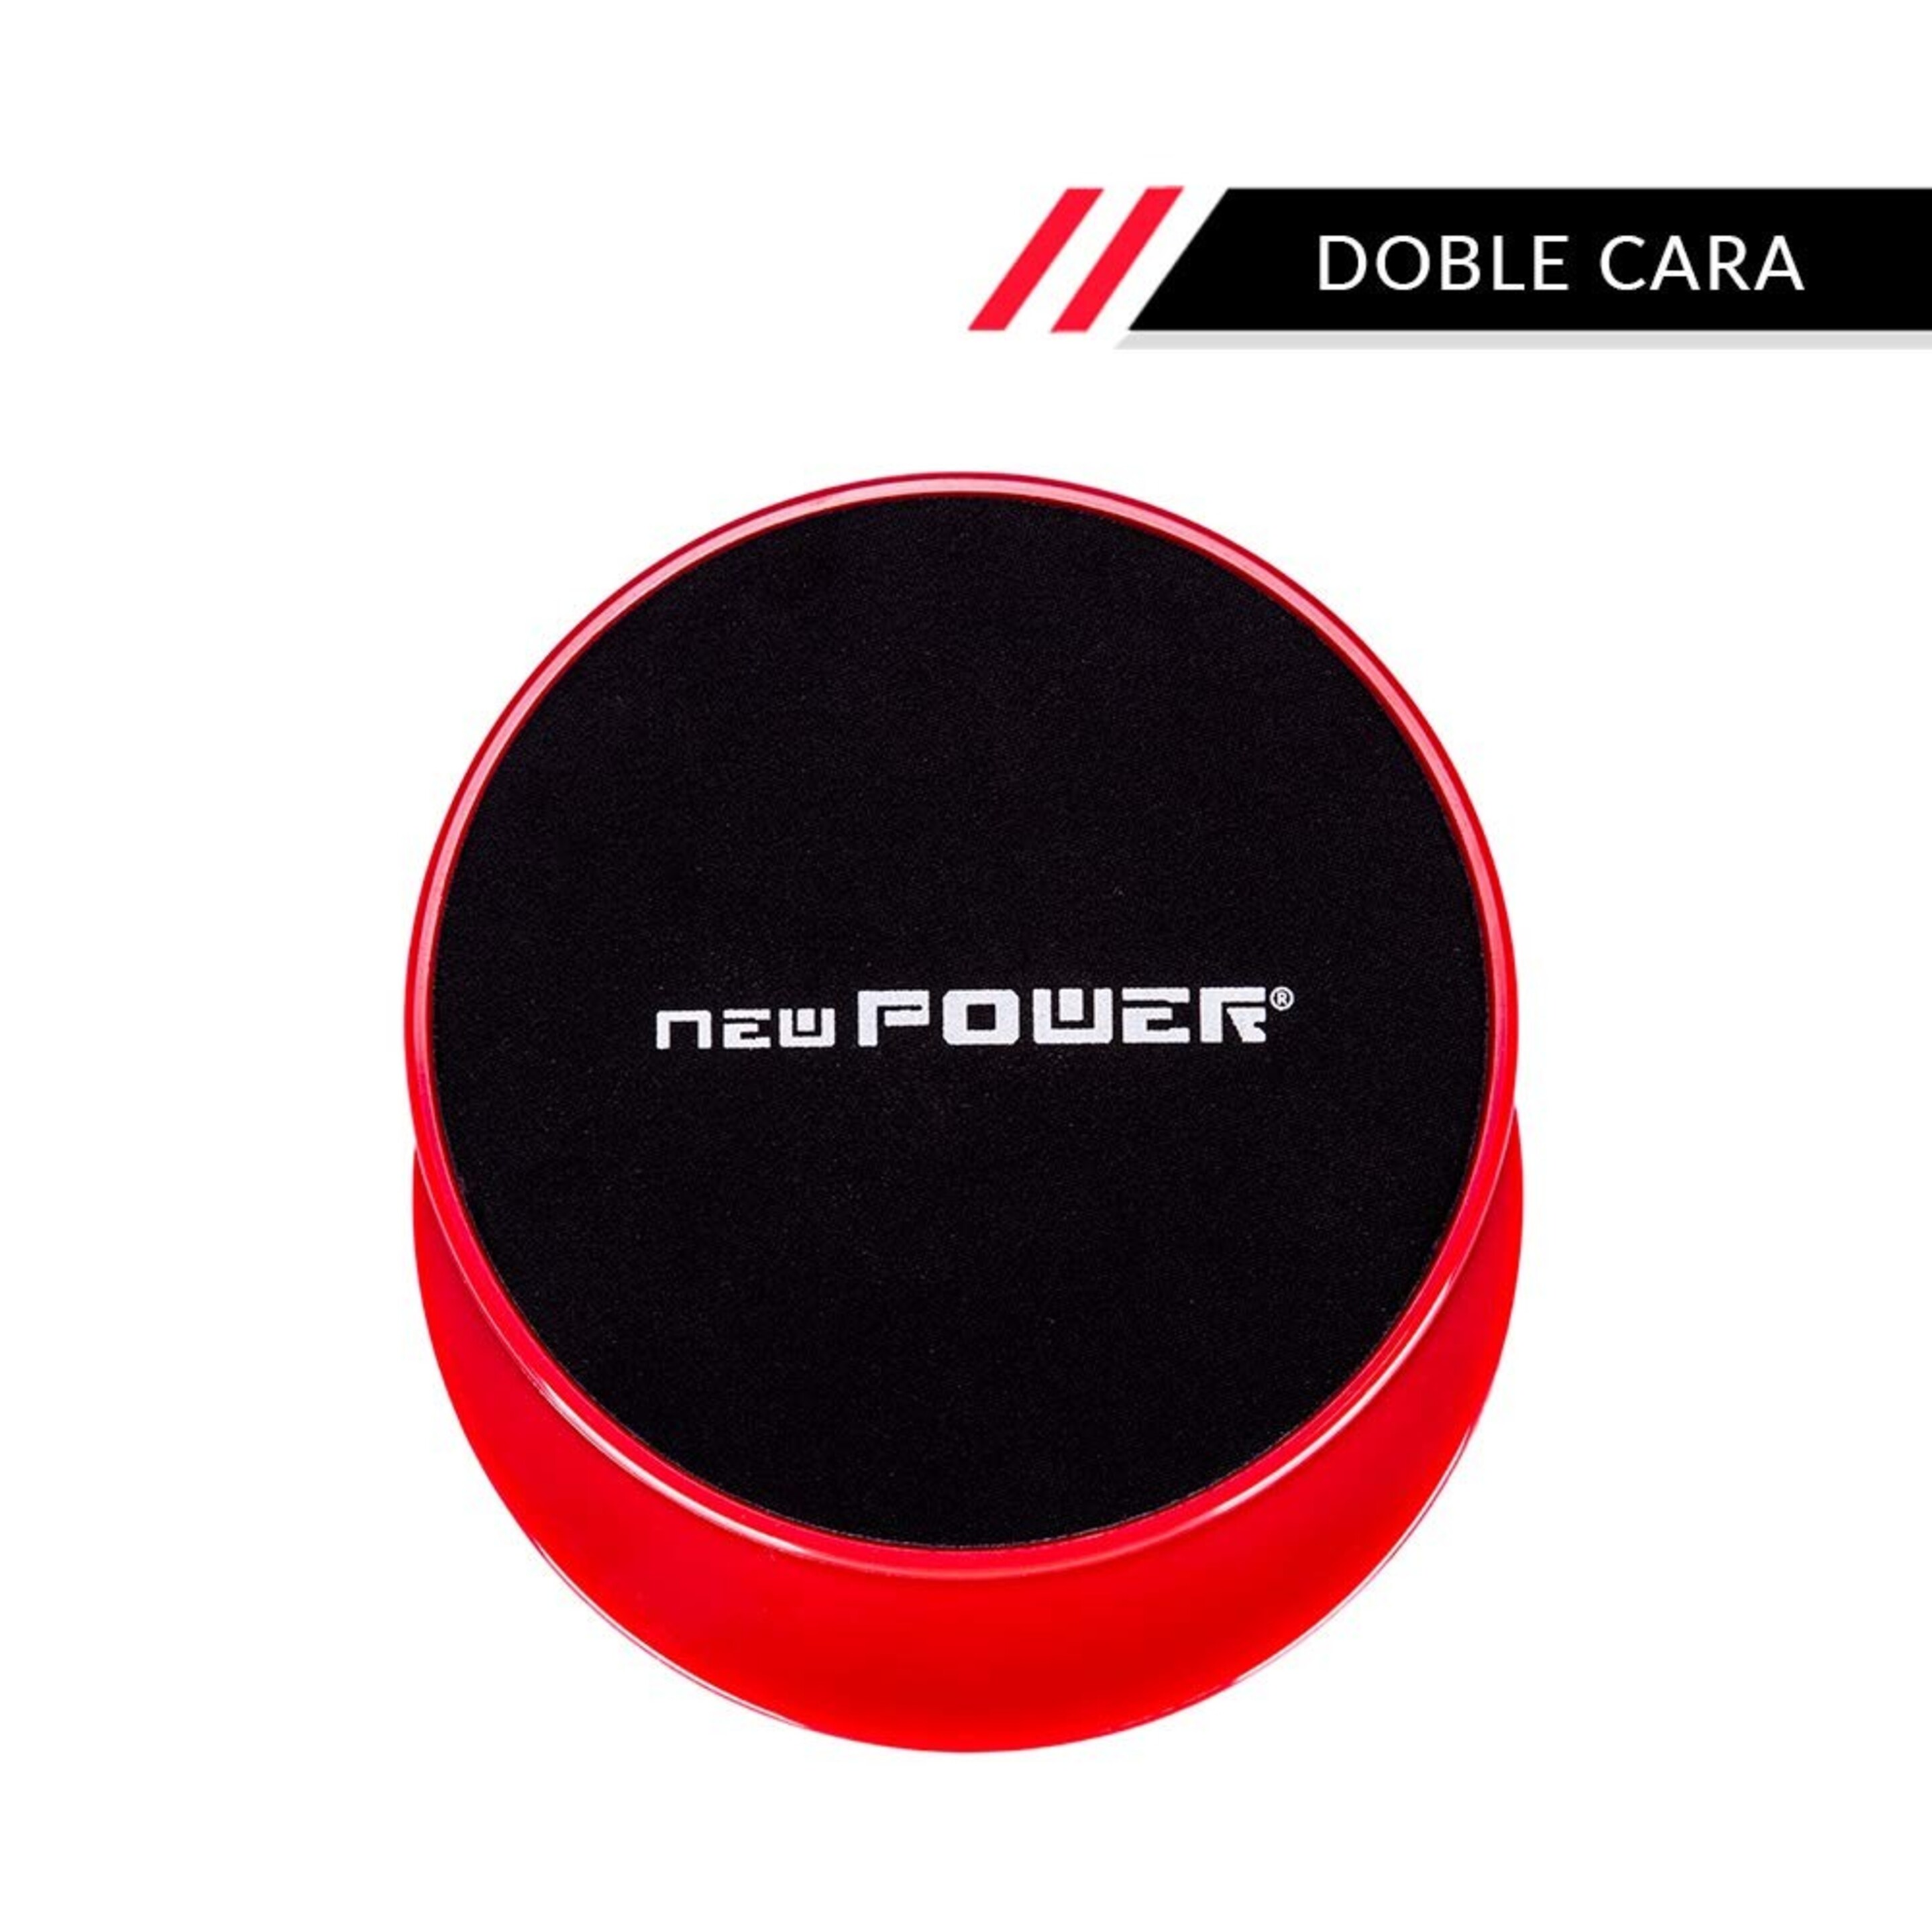 Newpower-discos Deslizantes Fitness Con Doble Cara(ø18cm) Para Mejorar Coordinación Y Equilibrio.